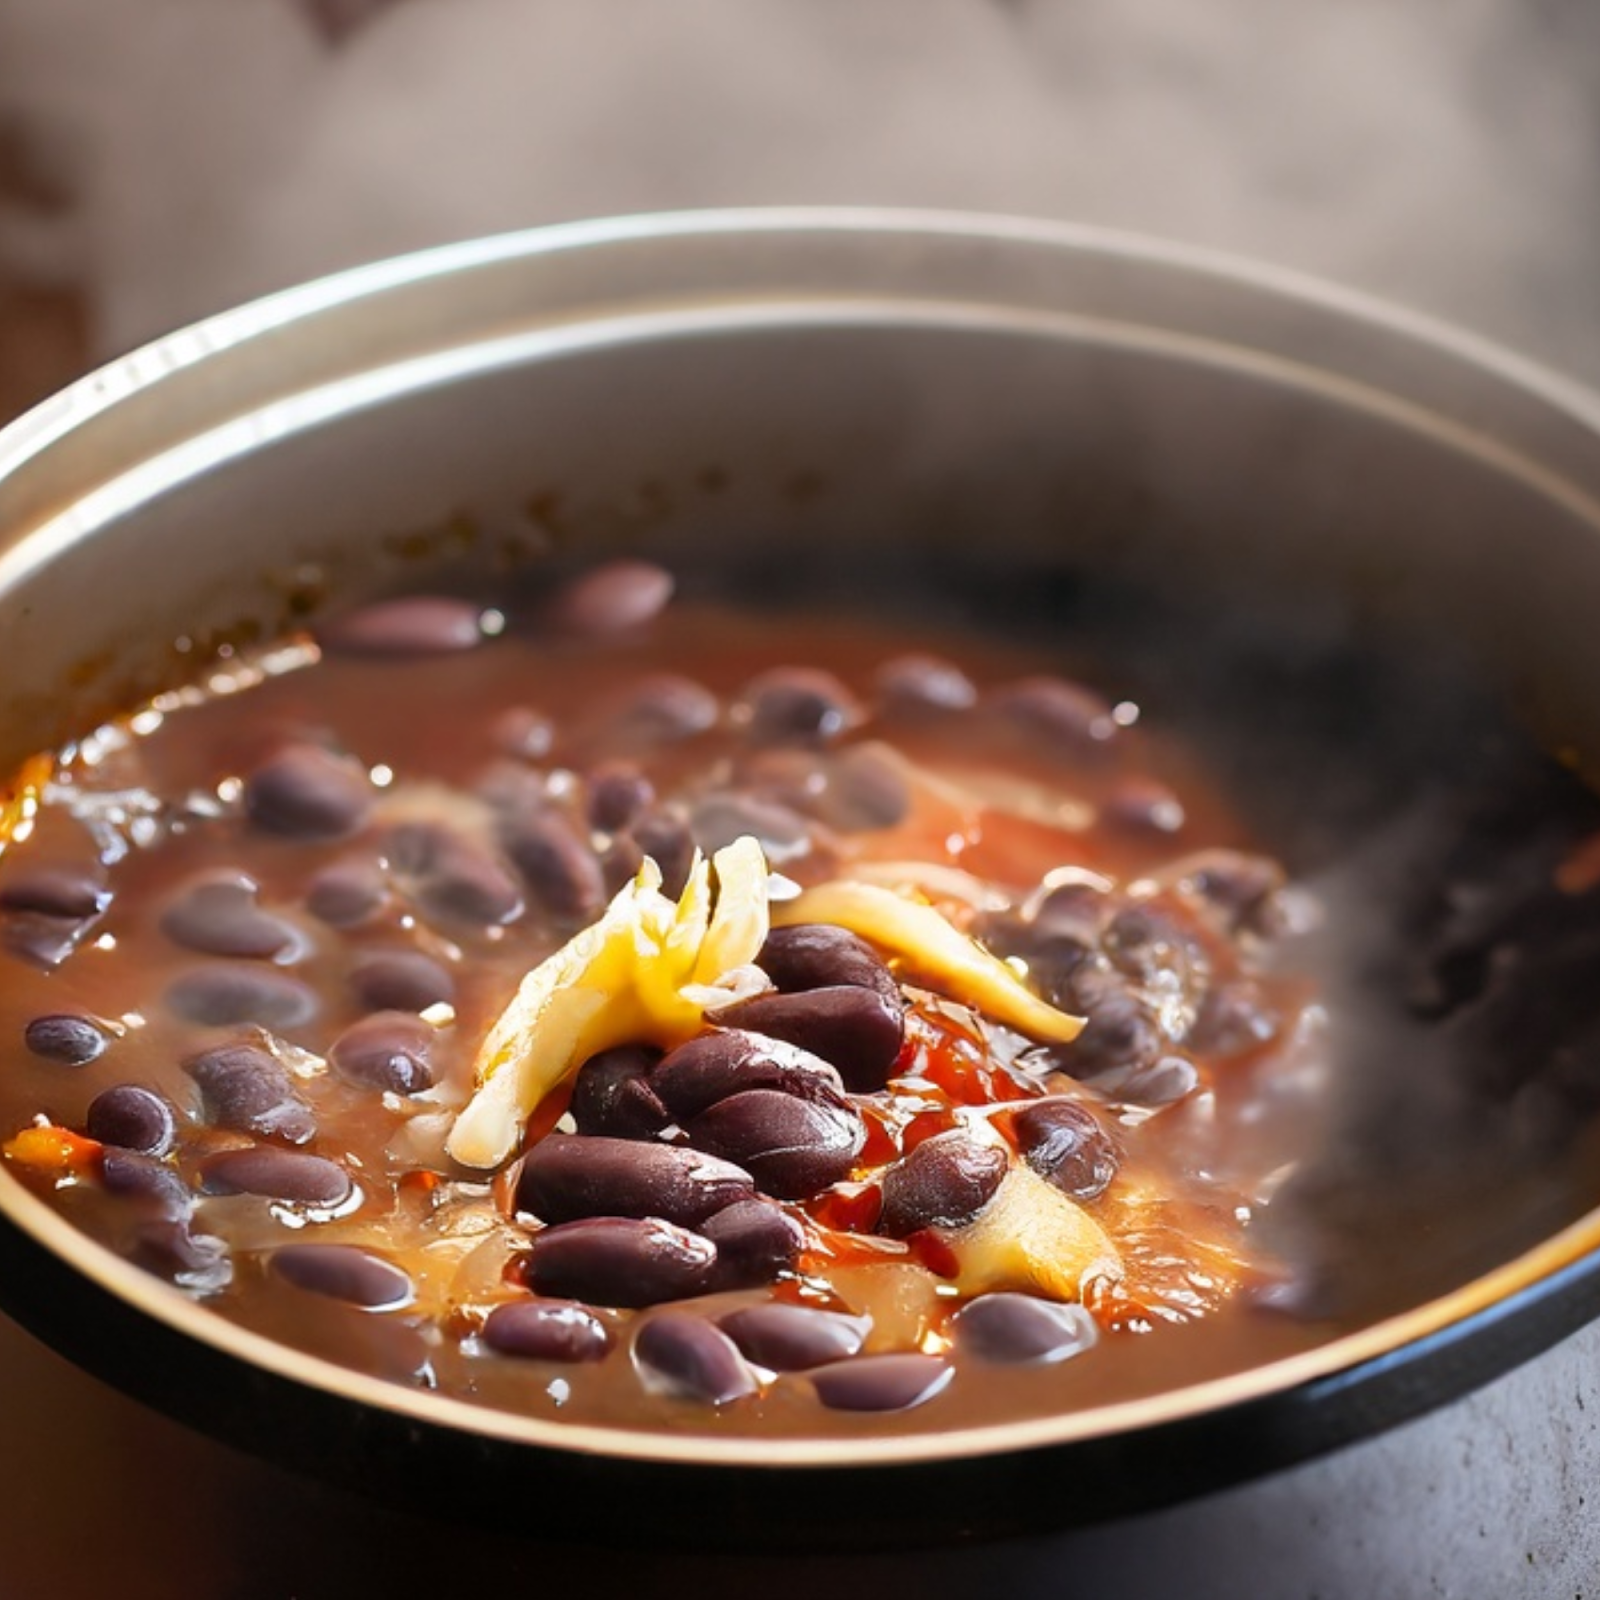 Korean Black Bean Soup